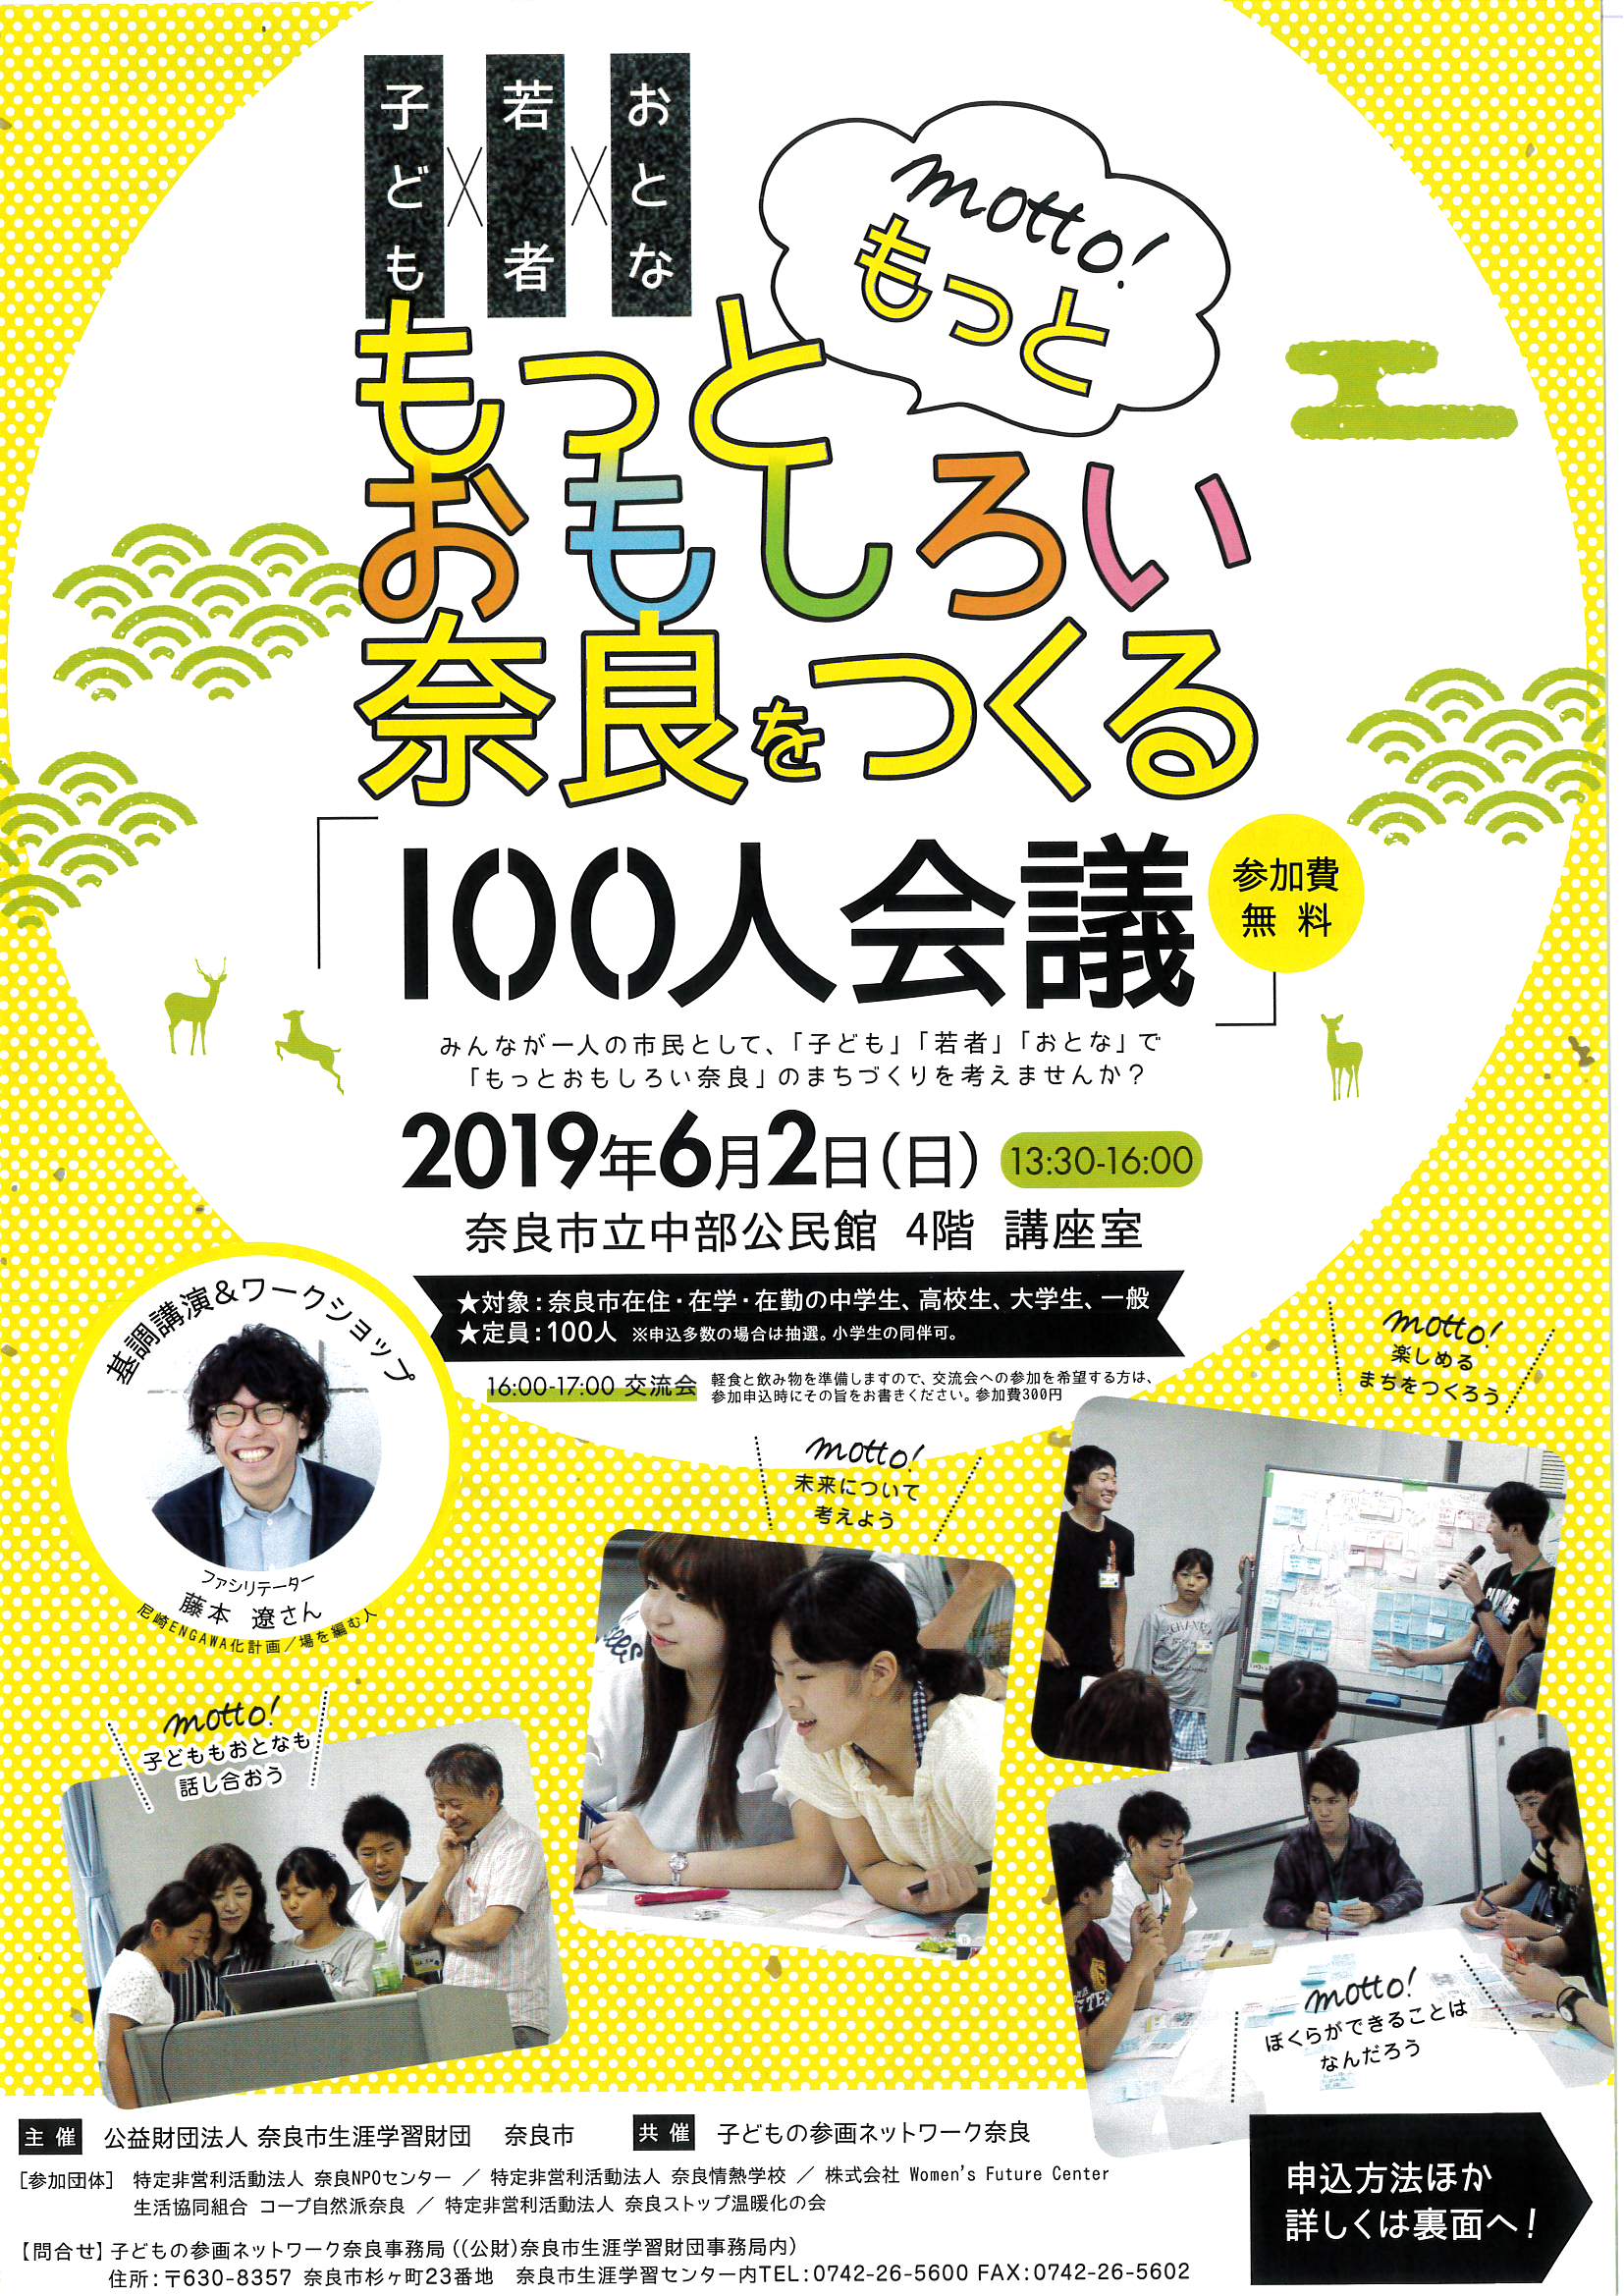 子ども×若者×おとな「もっともっとおもしろい奈良をつくる100人会議」(令和元年5月14日発表)の画像1